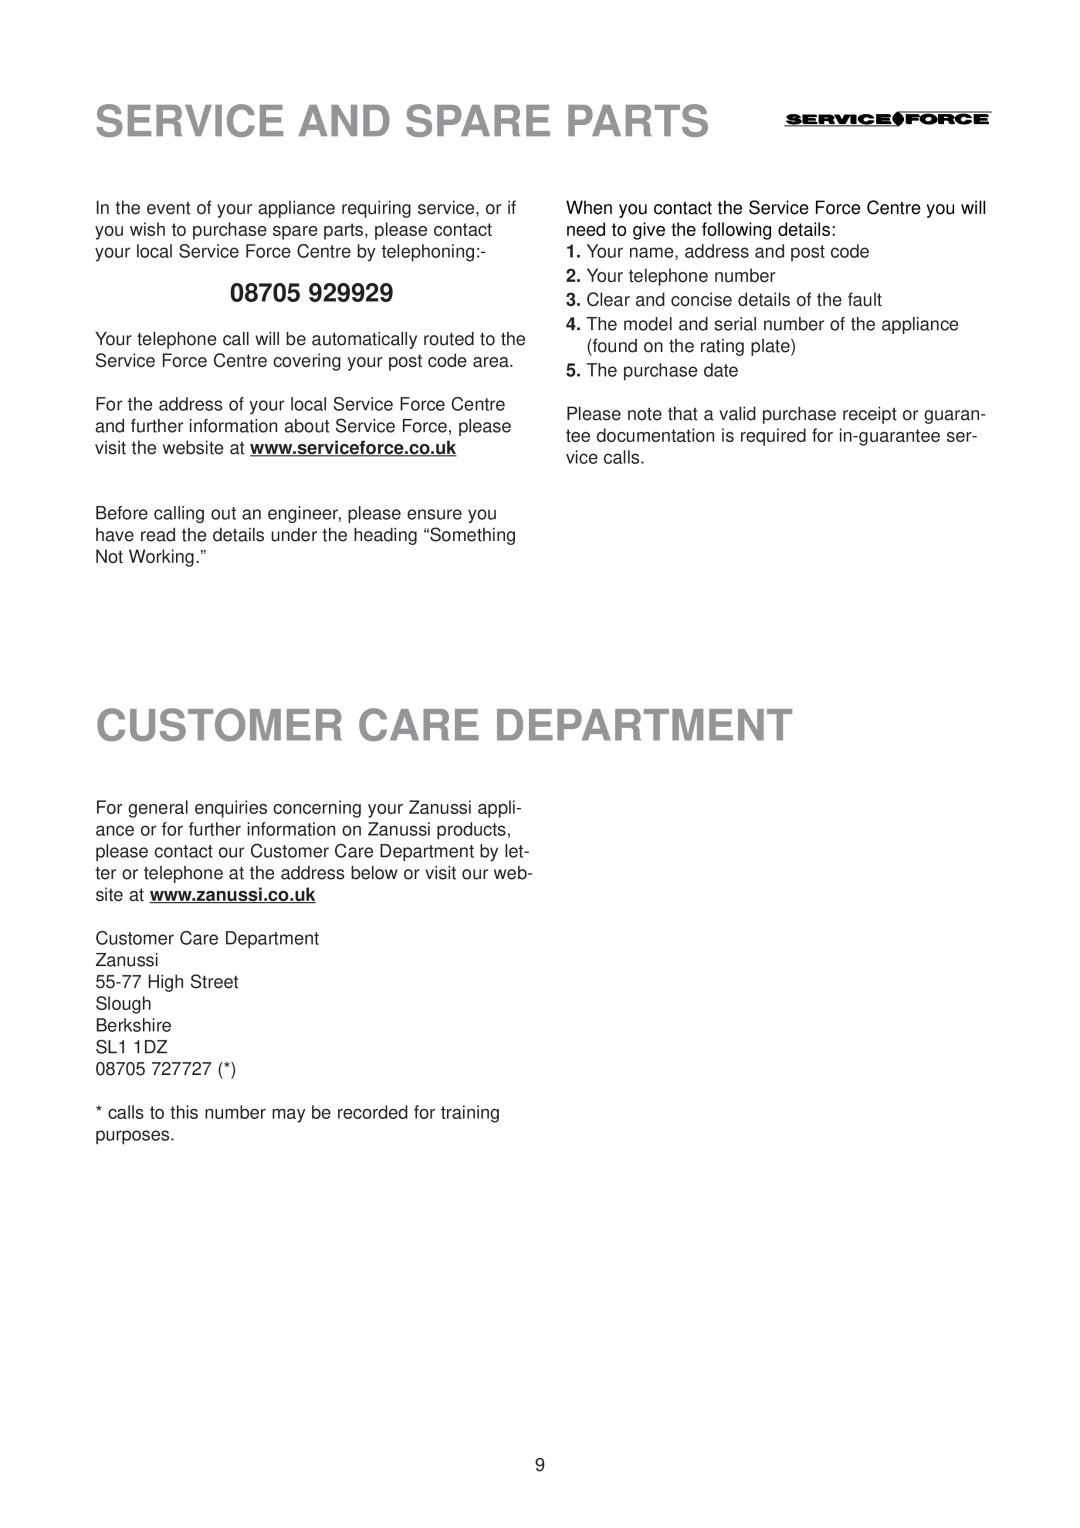 Zanussi ZU 9155 manual Service And Spare Parts, Customer Care Department 